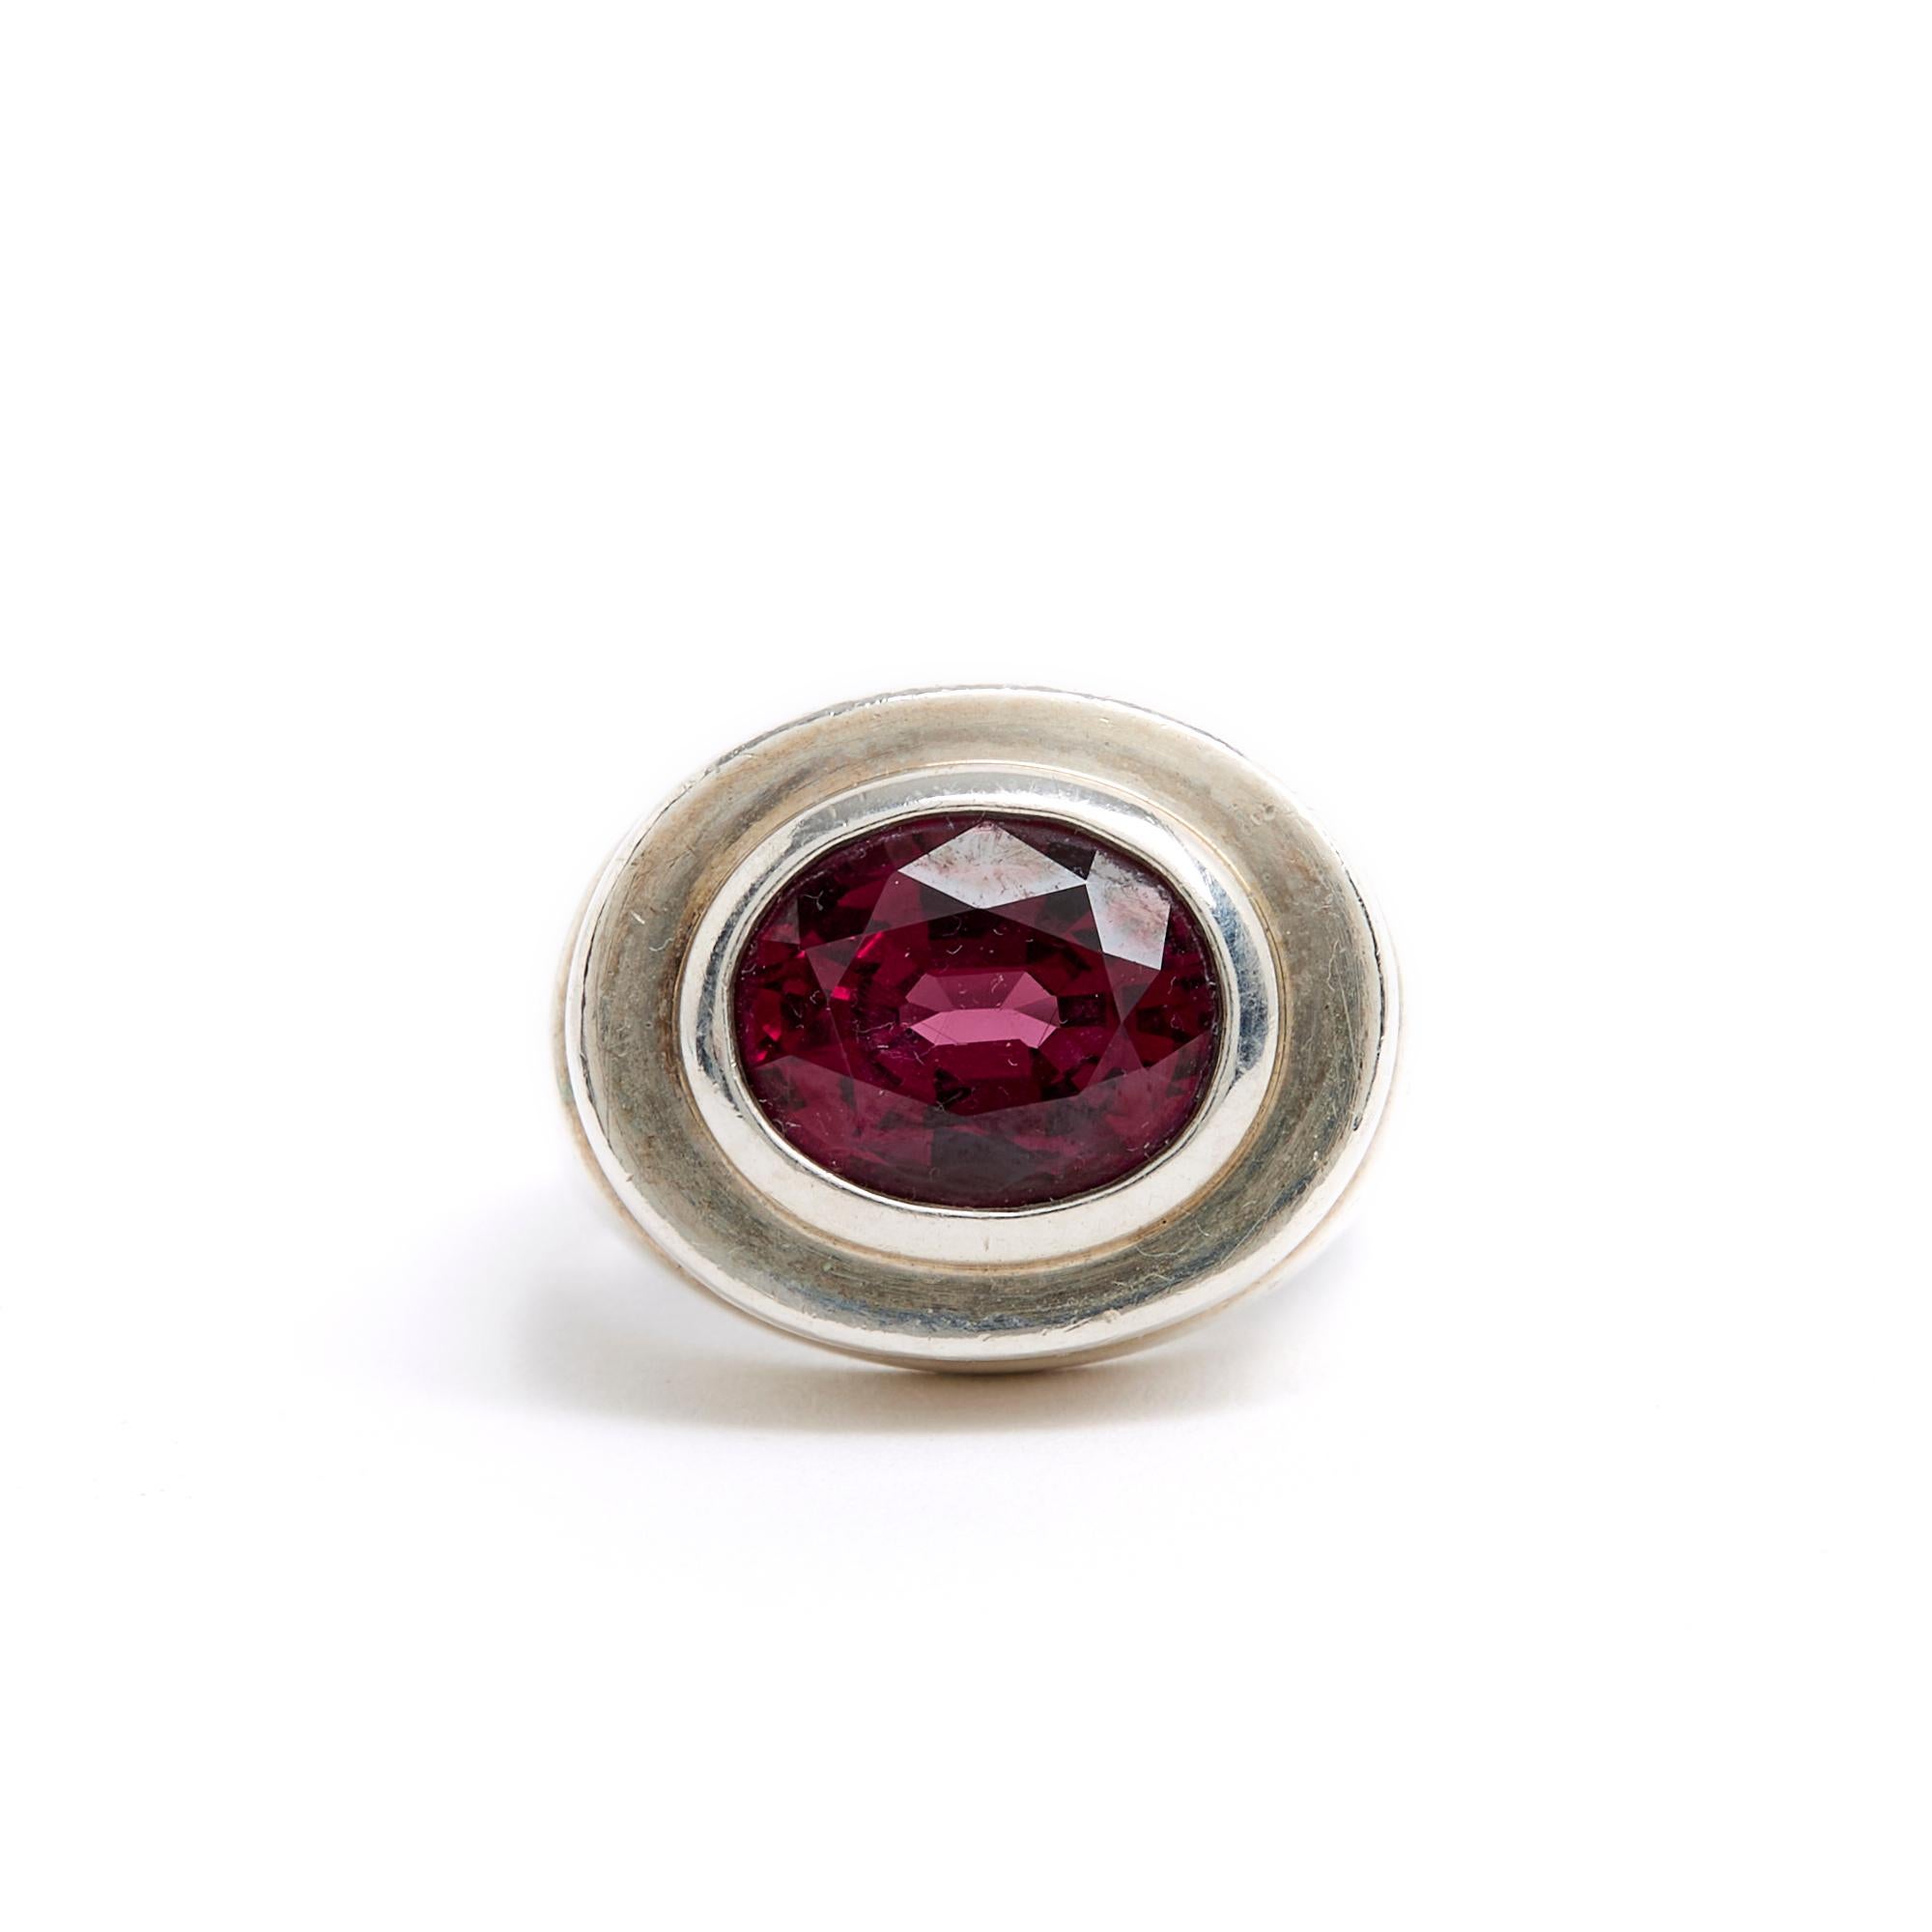 Tiffany&CO Ring von Paloma Picasso aus 925/1000 Silber, Art Deco Stil, verziert mit einem schönen Rhodolithen (Granatfamilie) in rosaroten Farbtönen. Fingergröße 51/52 oder US5 3/4, Innendurchmesser 1,65 cm. Der Ring wurde getragen und weist